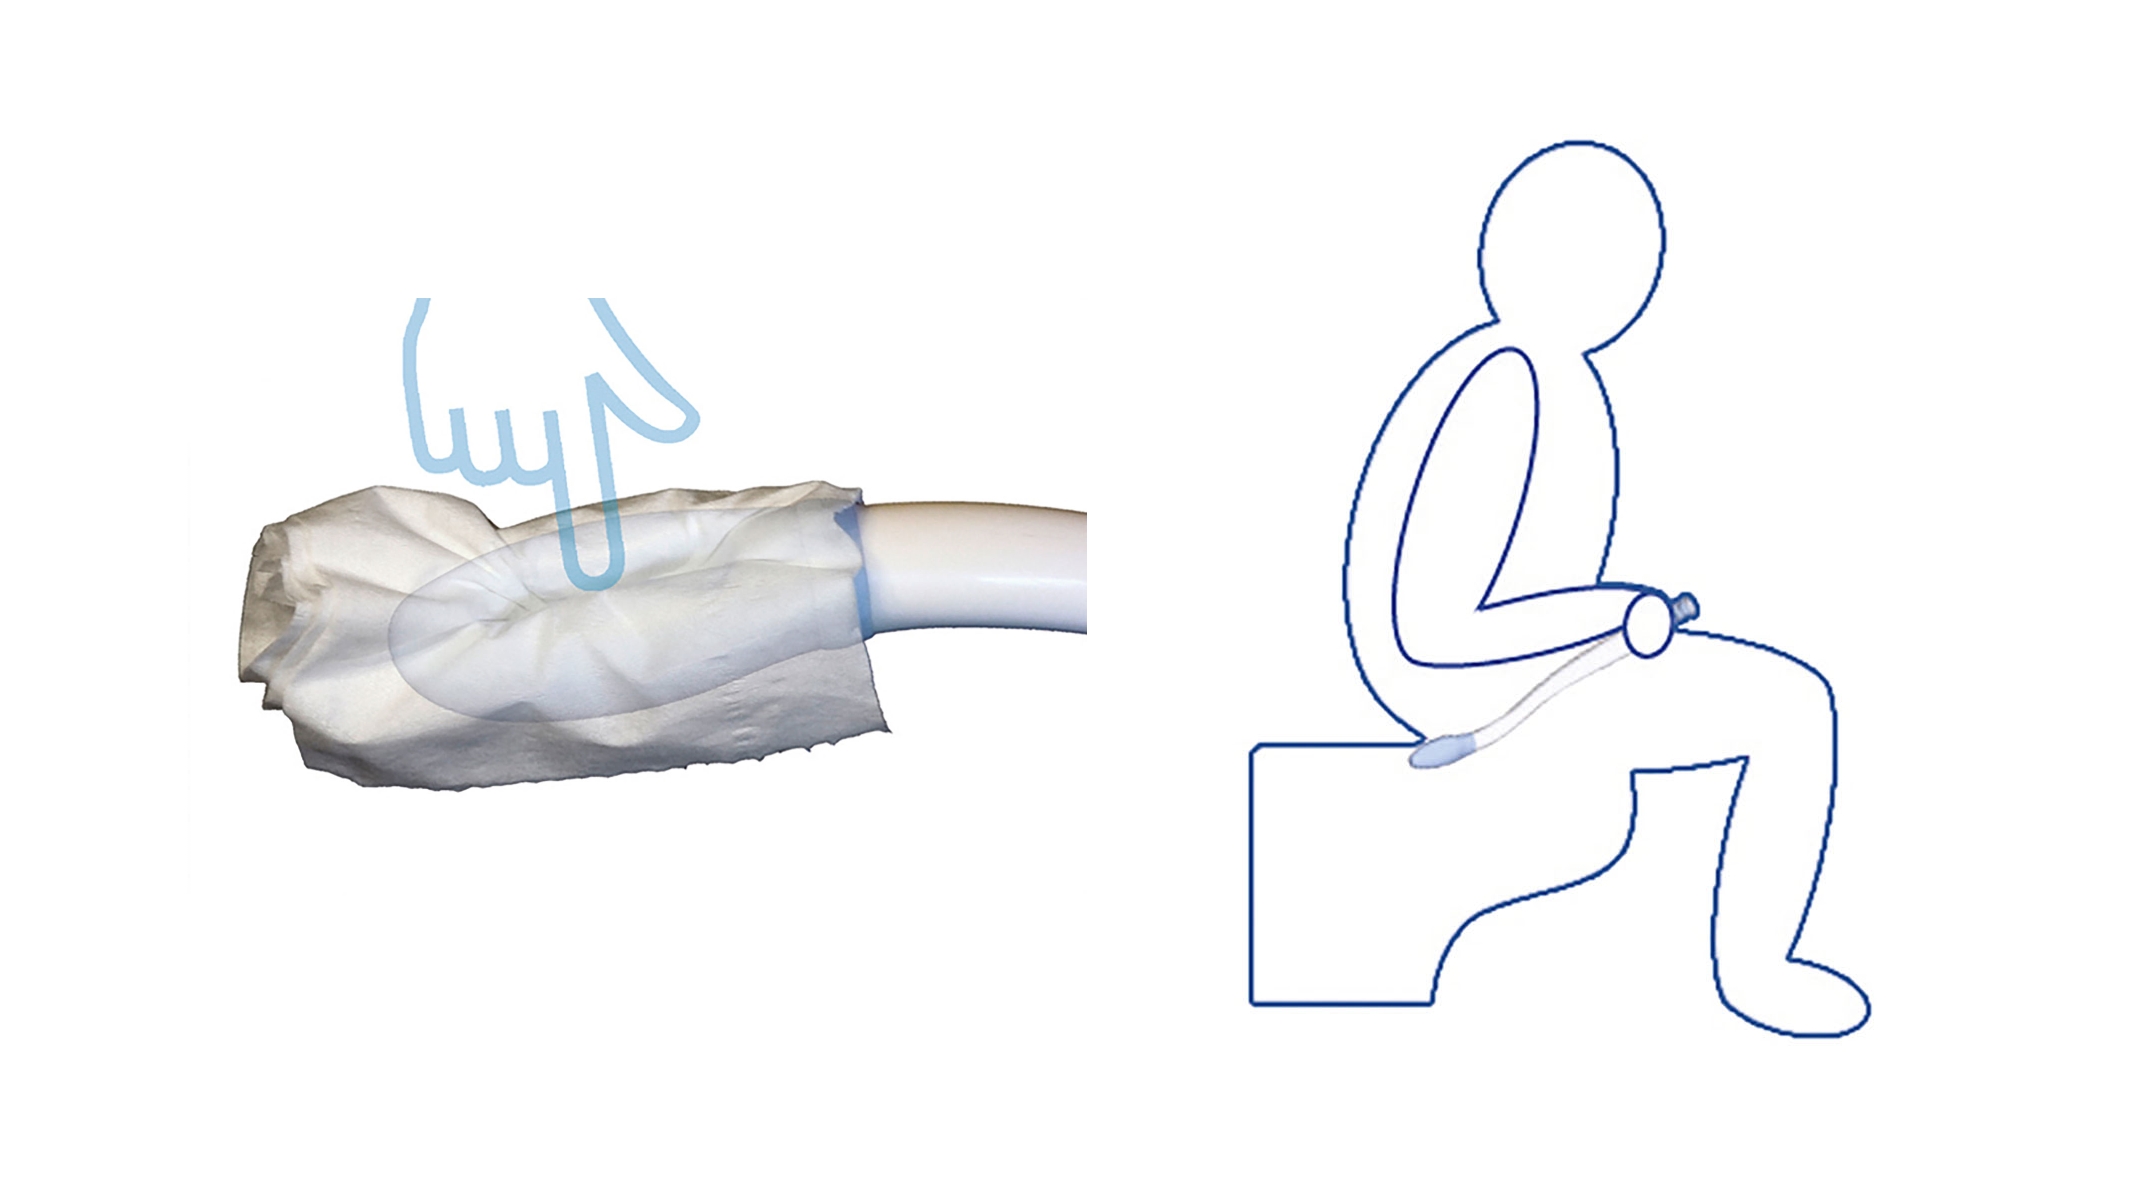 Zwei Skizzen zur Anwendung der Toilettenpaierhilfe, links das Anbringen des Papiers, rechts die Anwendung von einer auf der Toilette sitzenden Person 